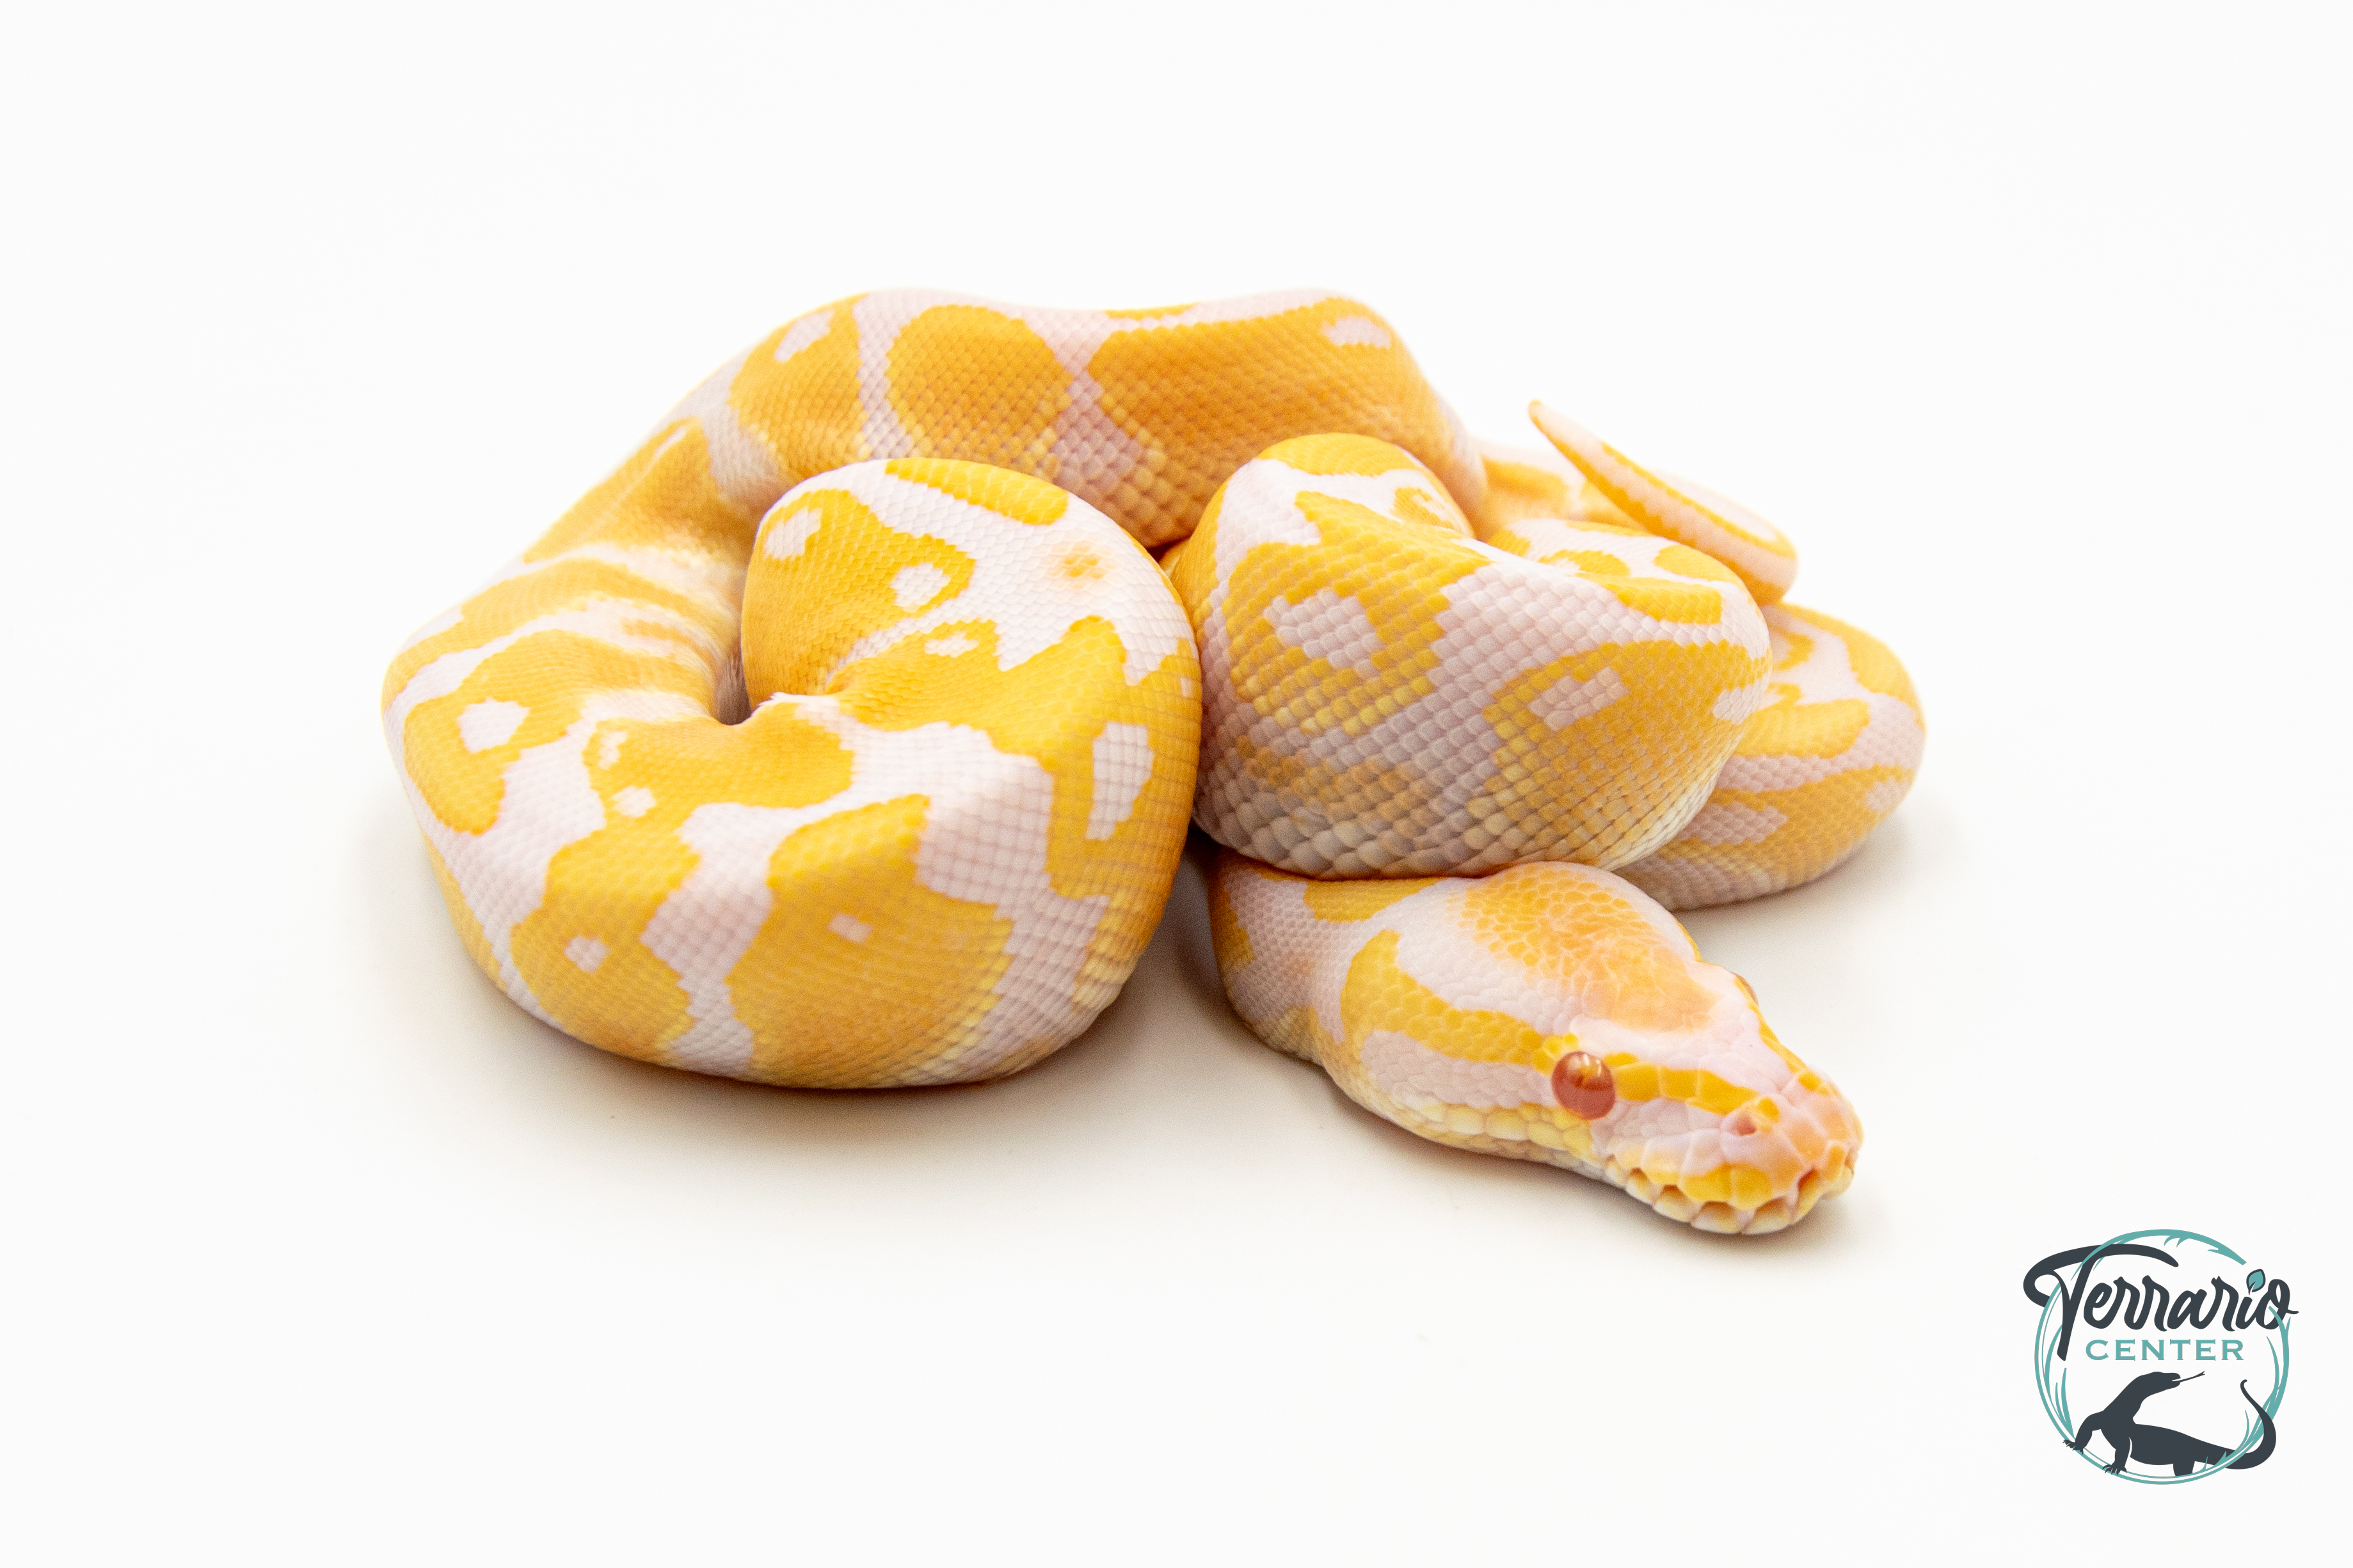 Python royal - Python regius Albinos